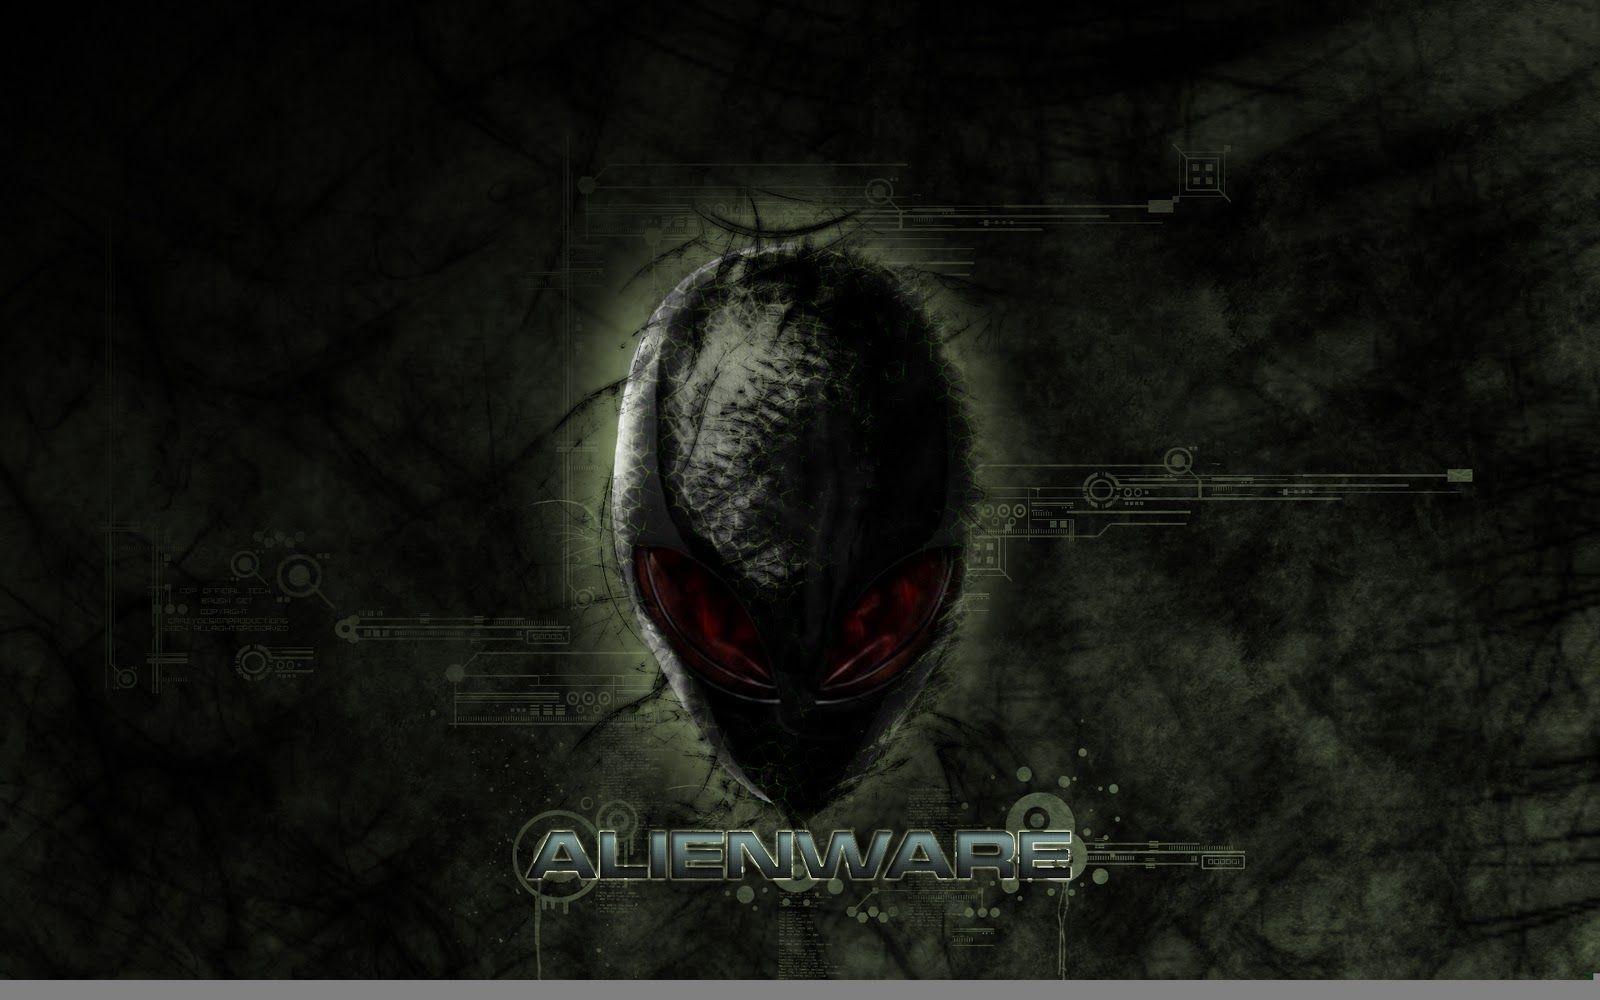 Alienware Desktop Background Wallpaper. PicsWallpaper